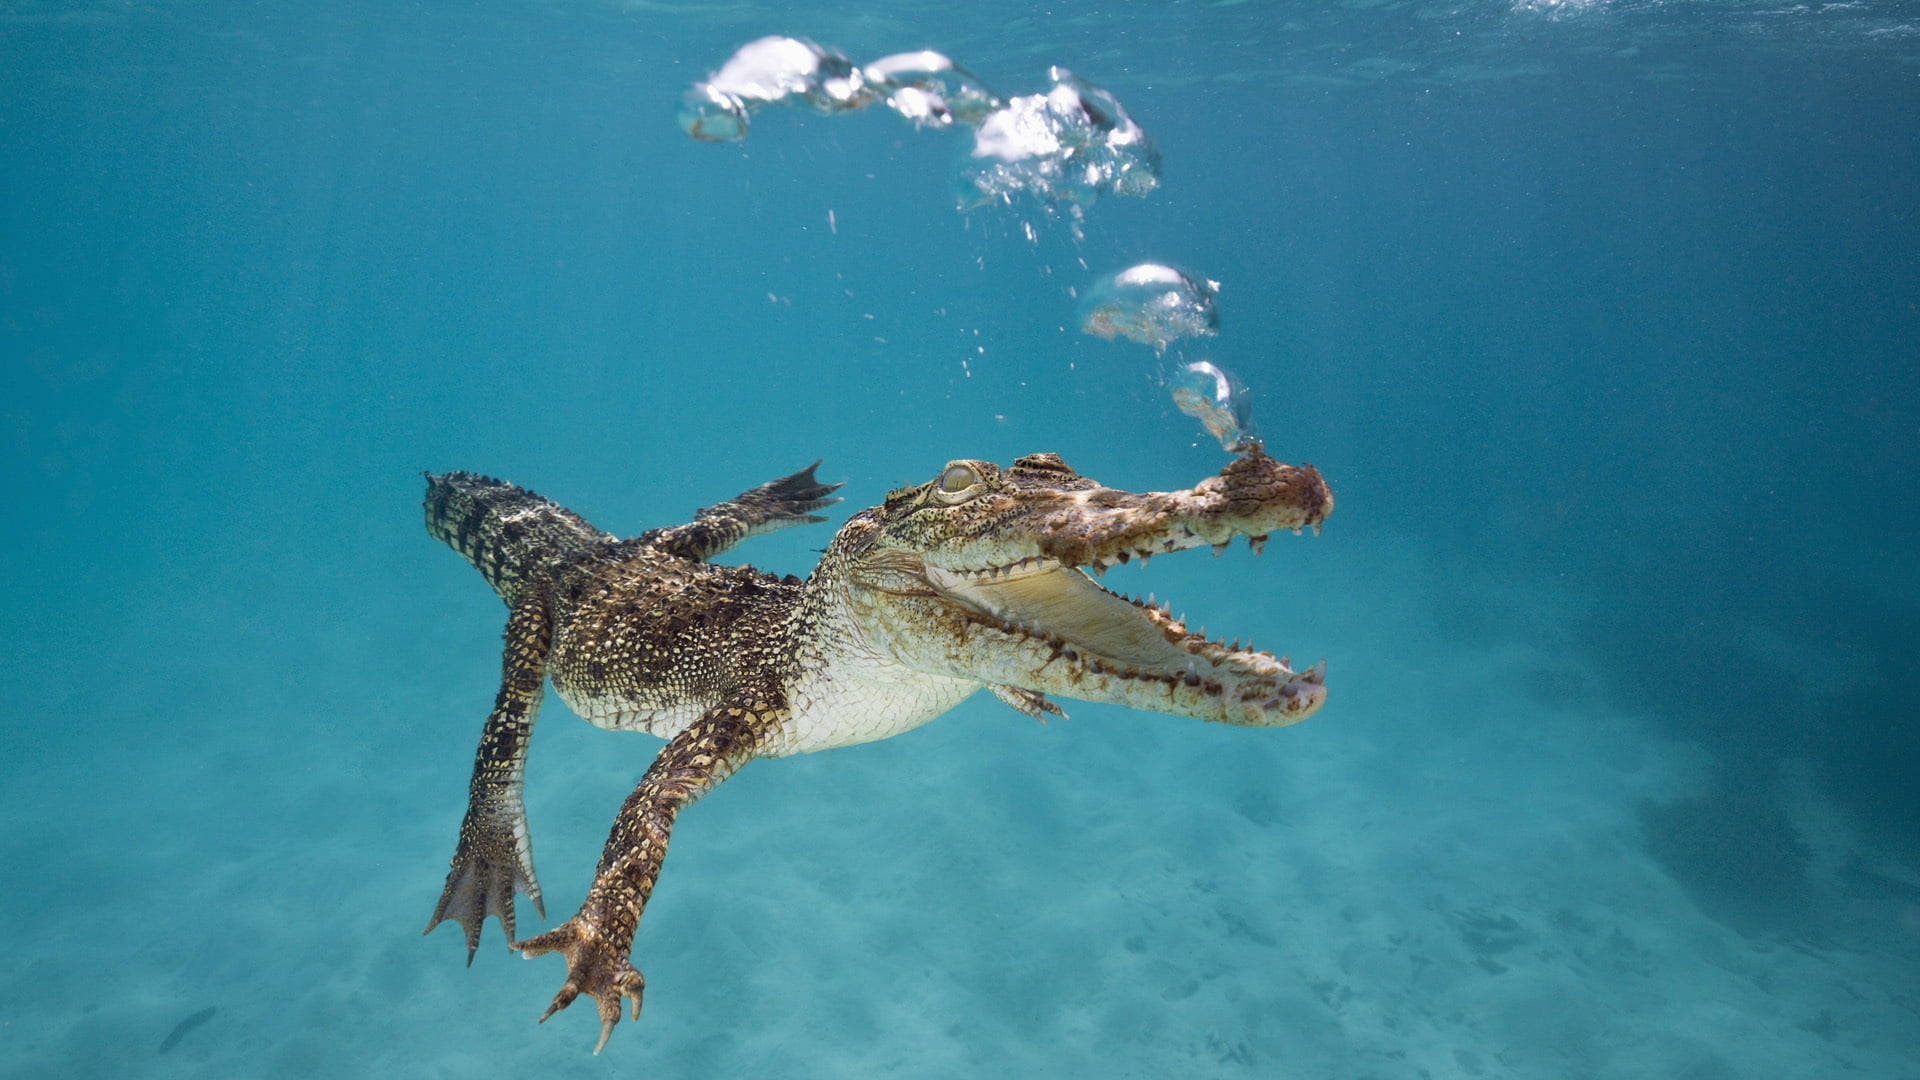 Underwater Alligator Wallpaper